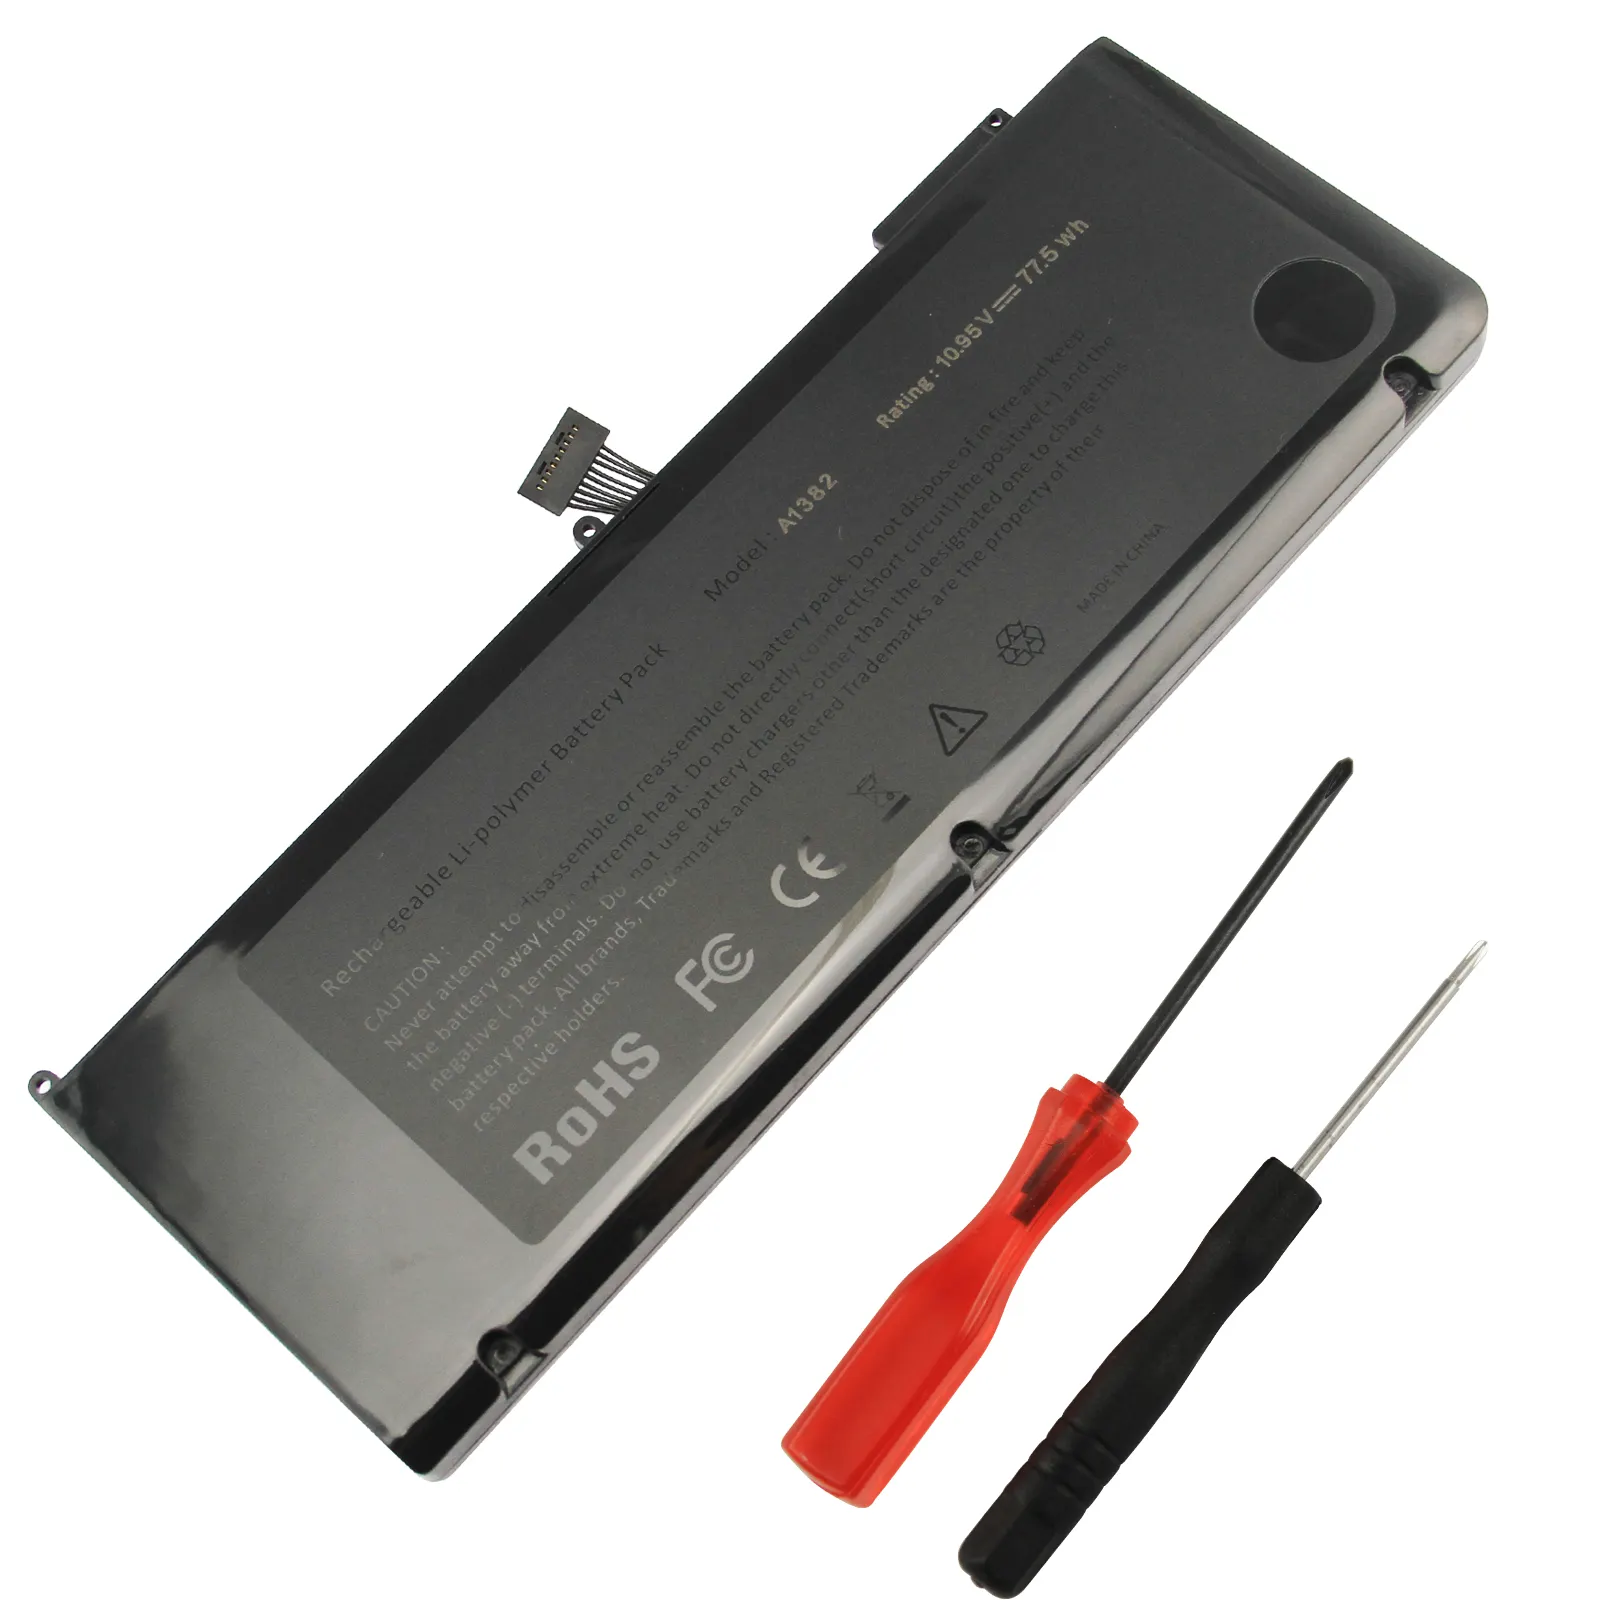 Pengganti Baterai Laptop untuk MacBooK Pro 15 A1286 A1382 A1321 MC721 MC371